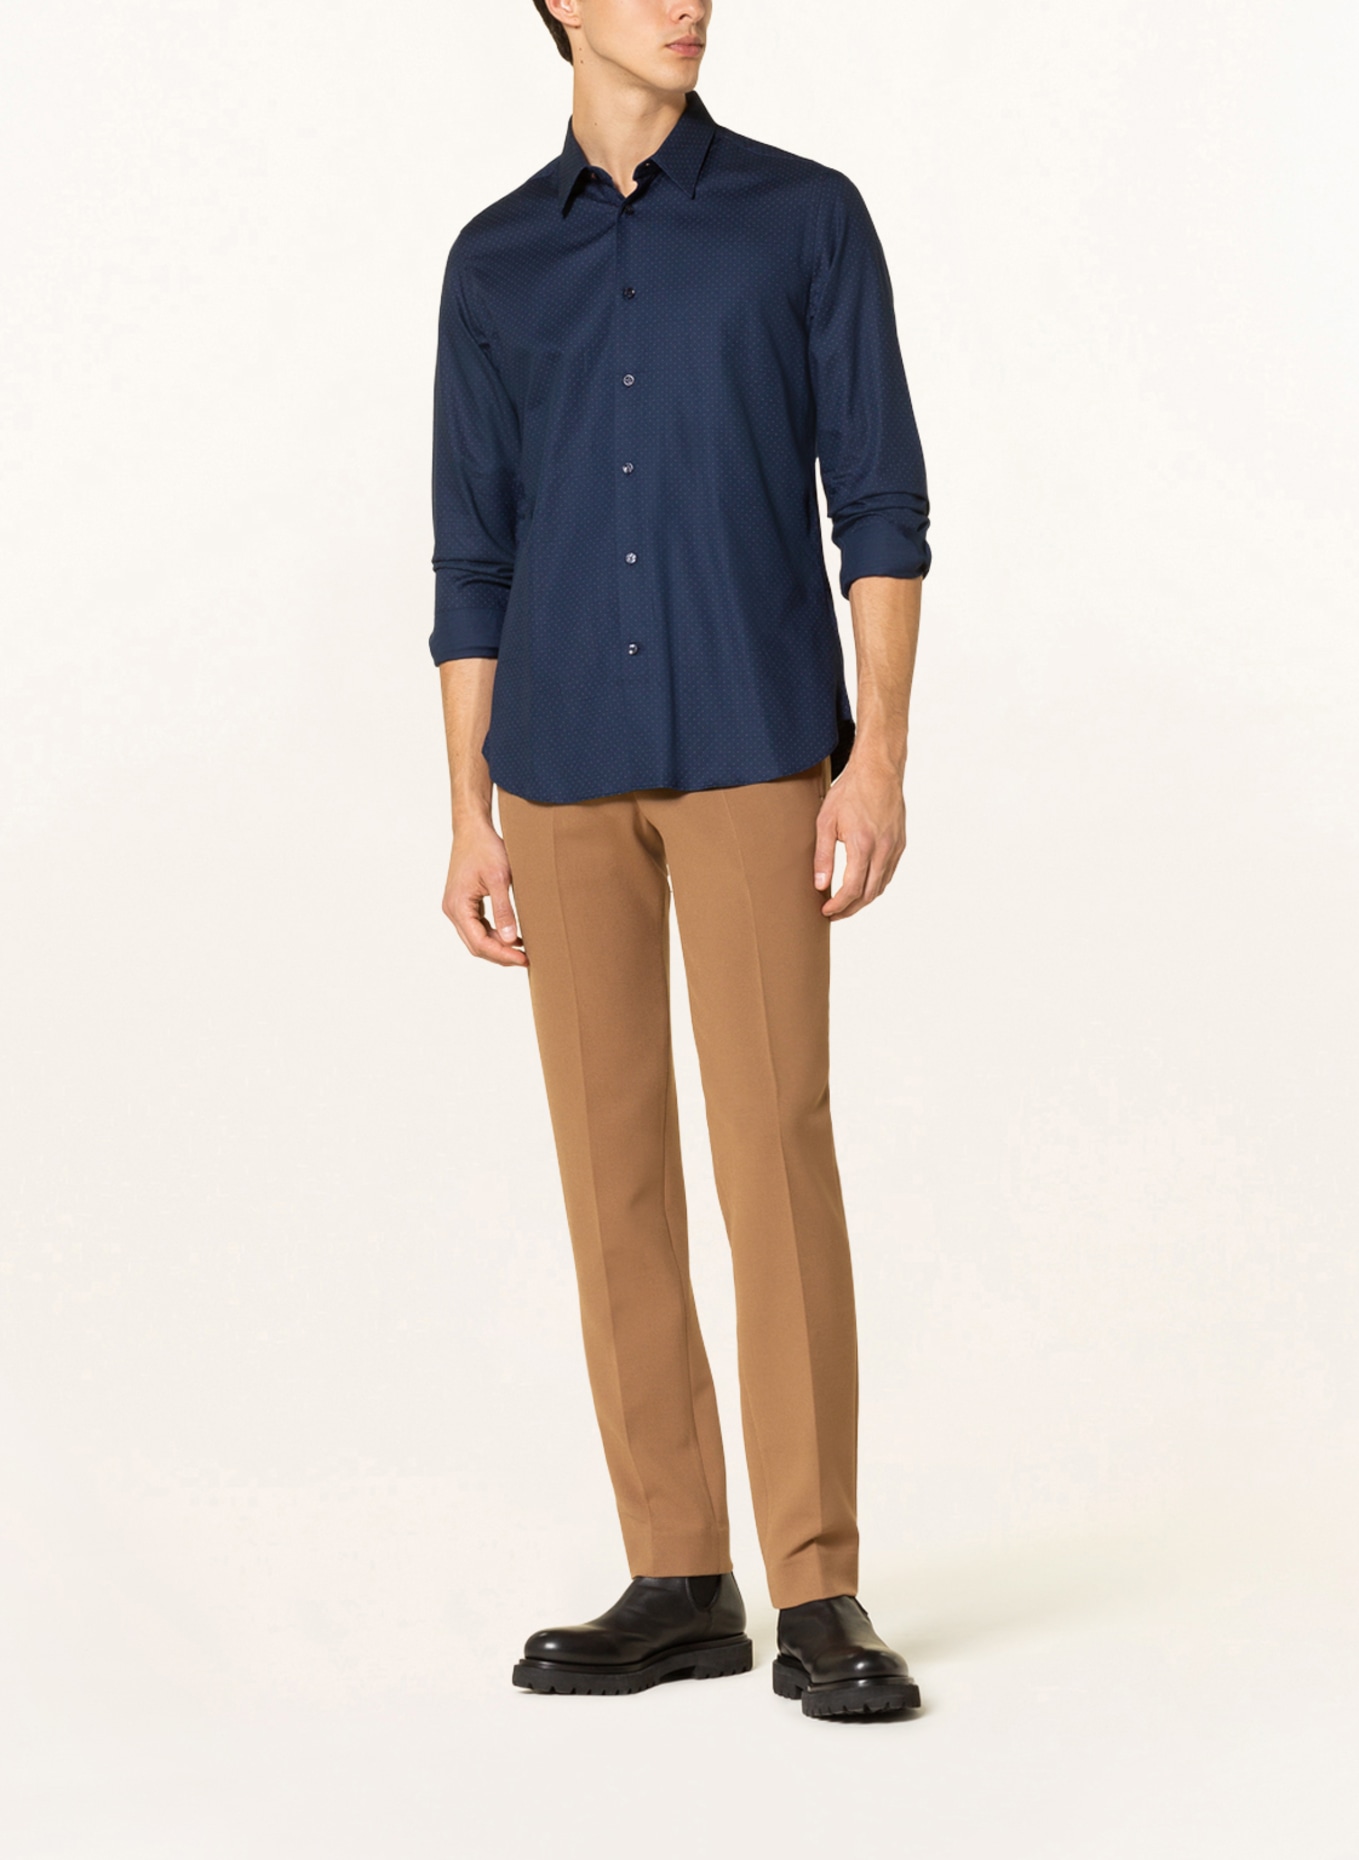 TED BAKER Hemd Slim Fit LAURSS, Farbe: DUNKELBLAU (Bild 2)